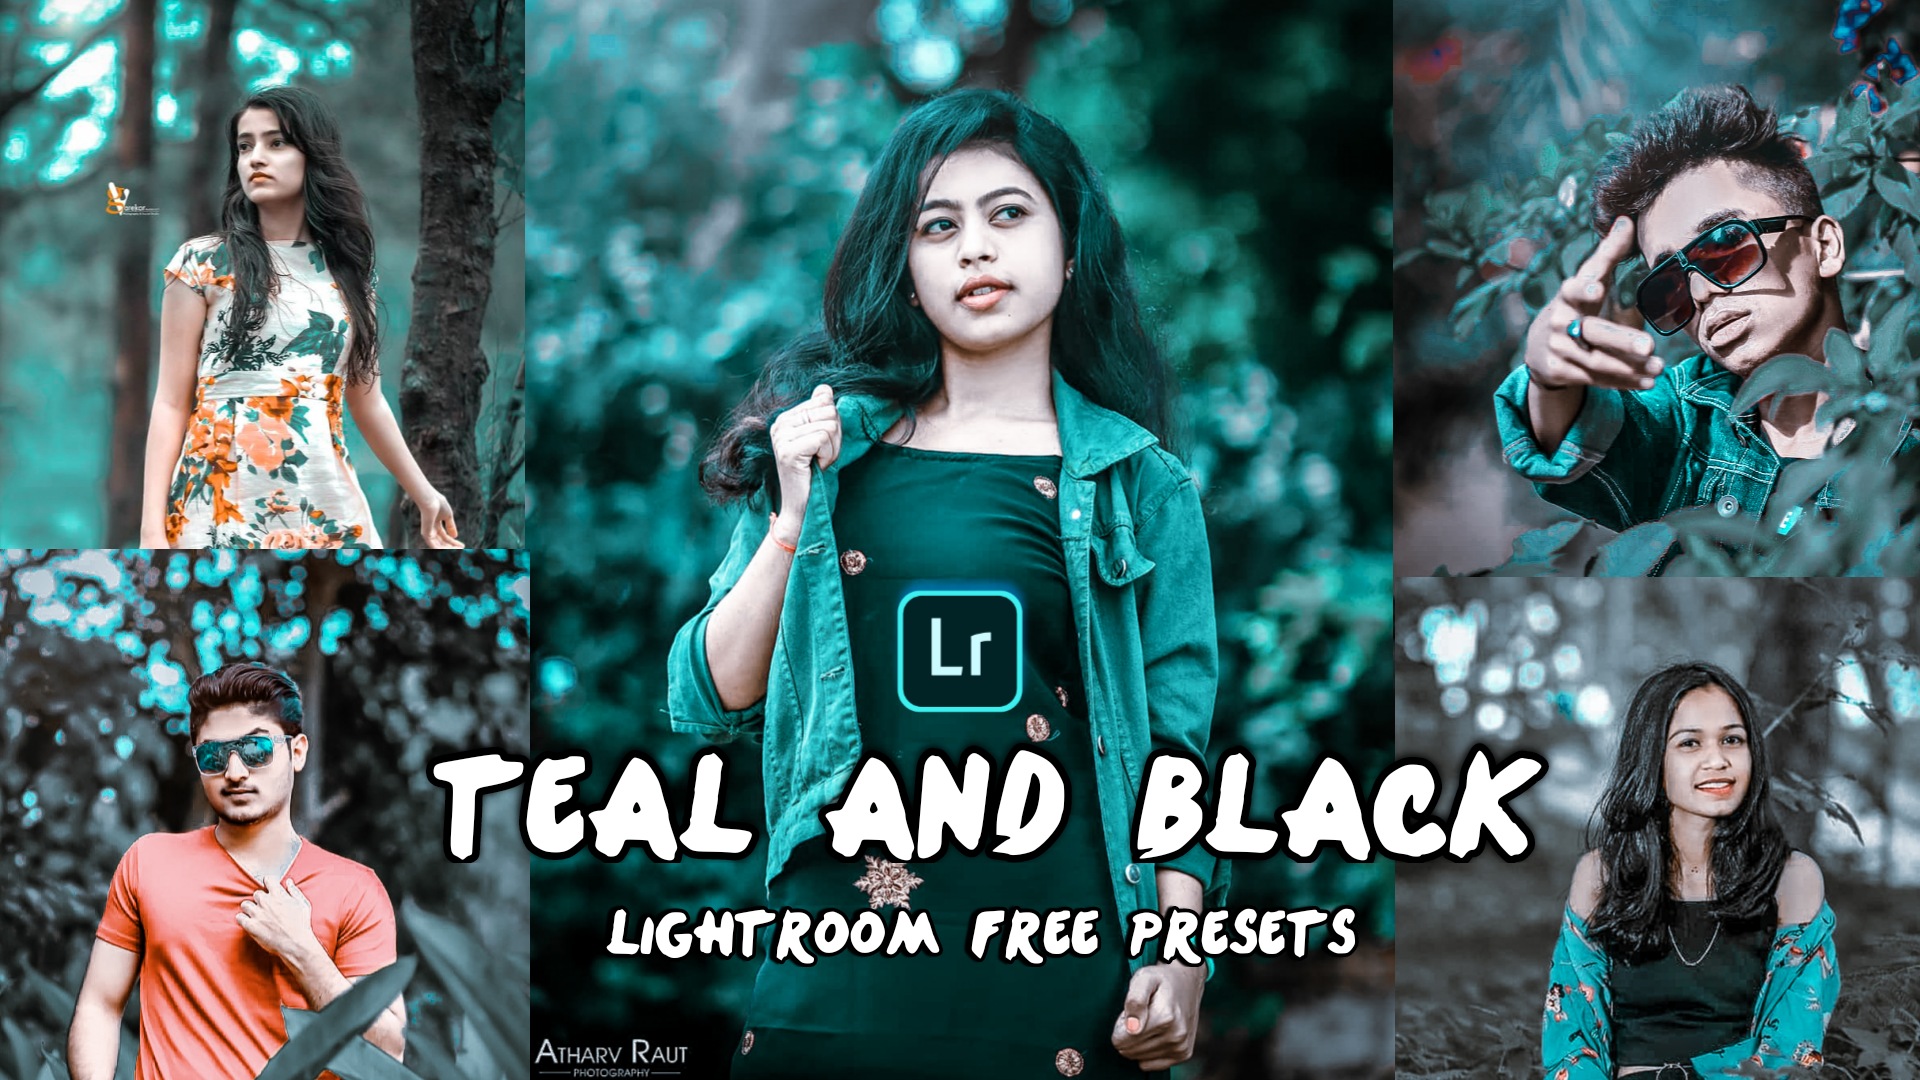 Teal and black lightroom preset download free - LEARNINGWITHSR